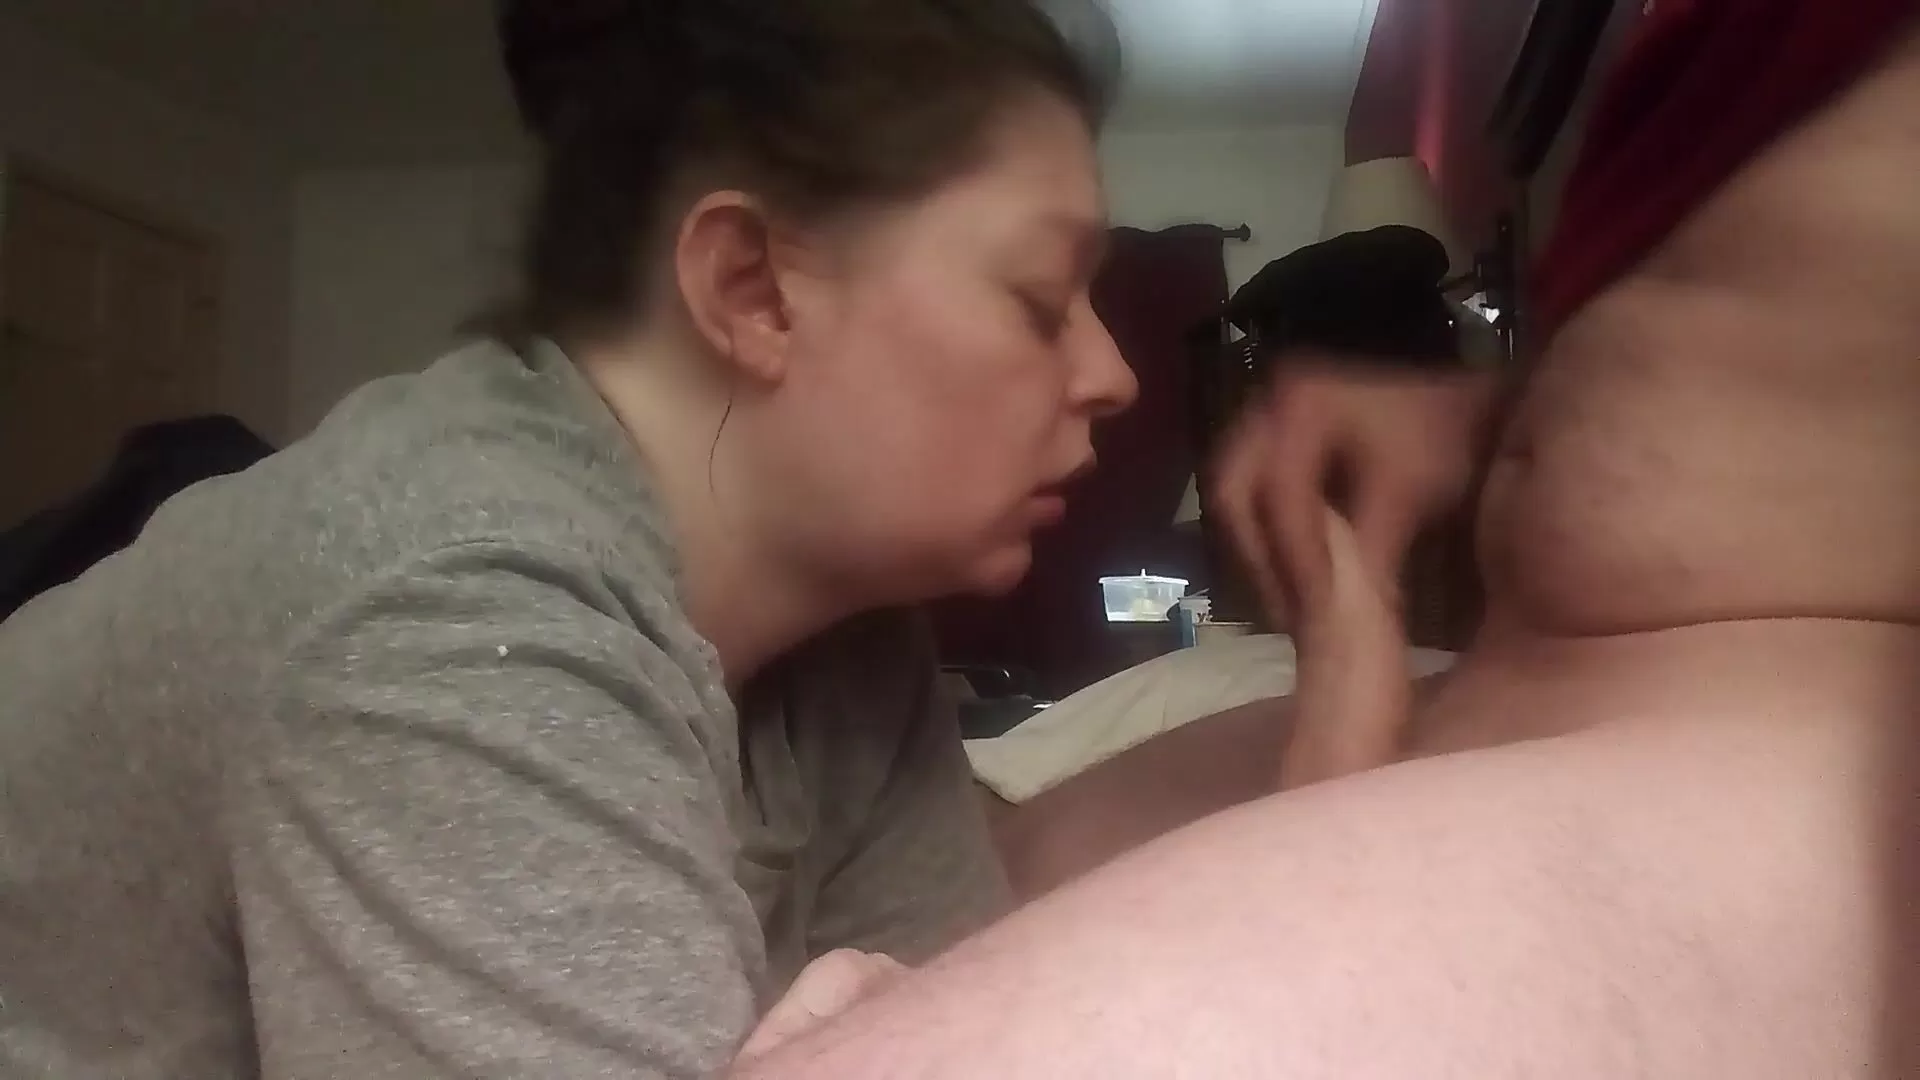 Украинская жена делает соседке своего мужа минет и глотает его сперму